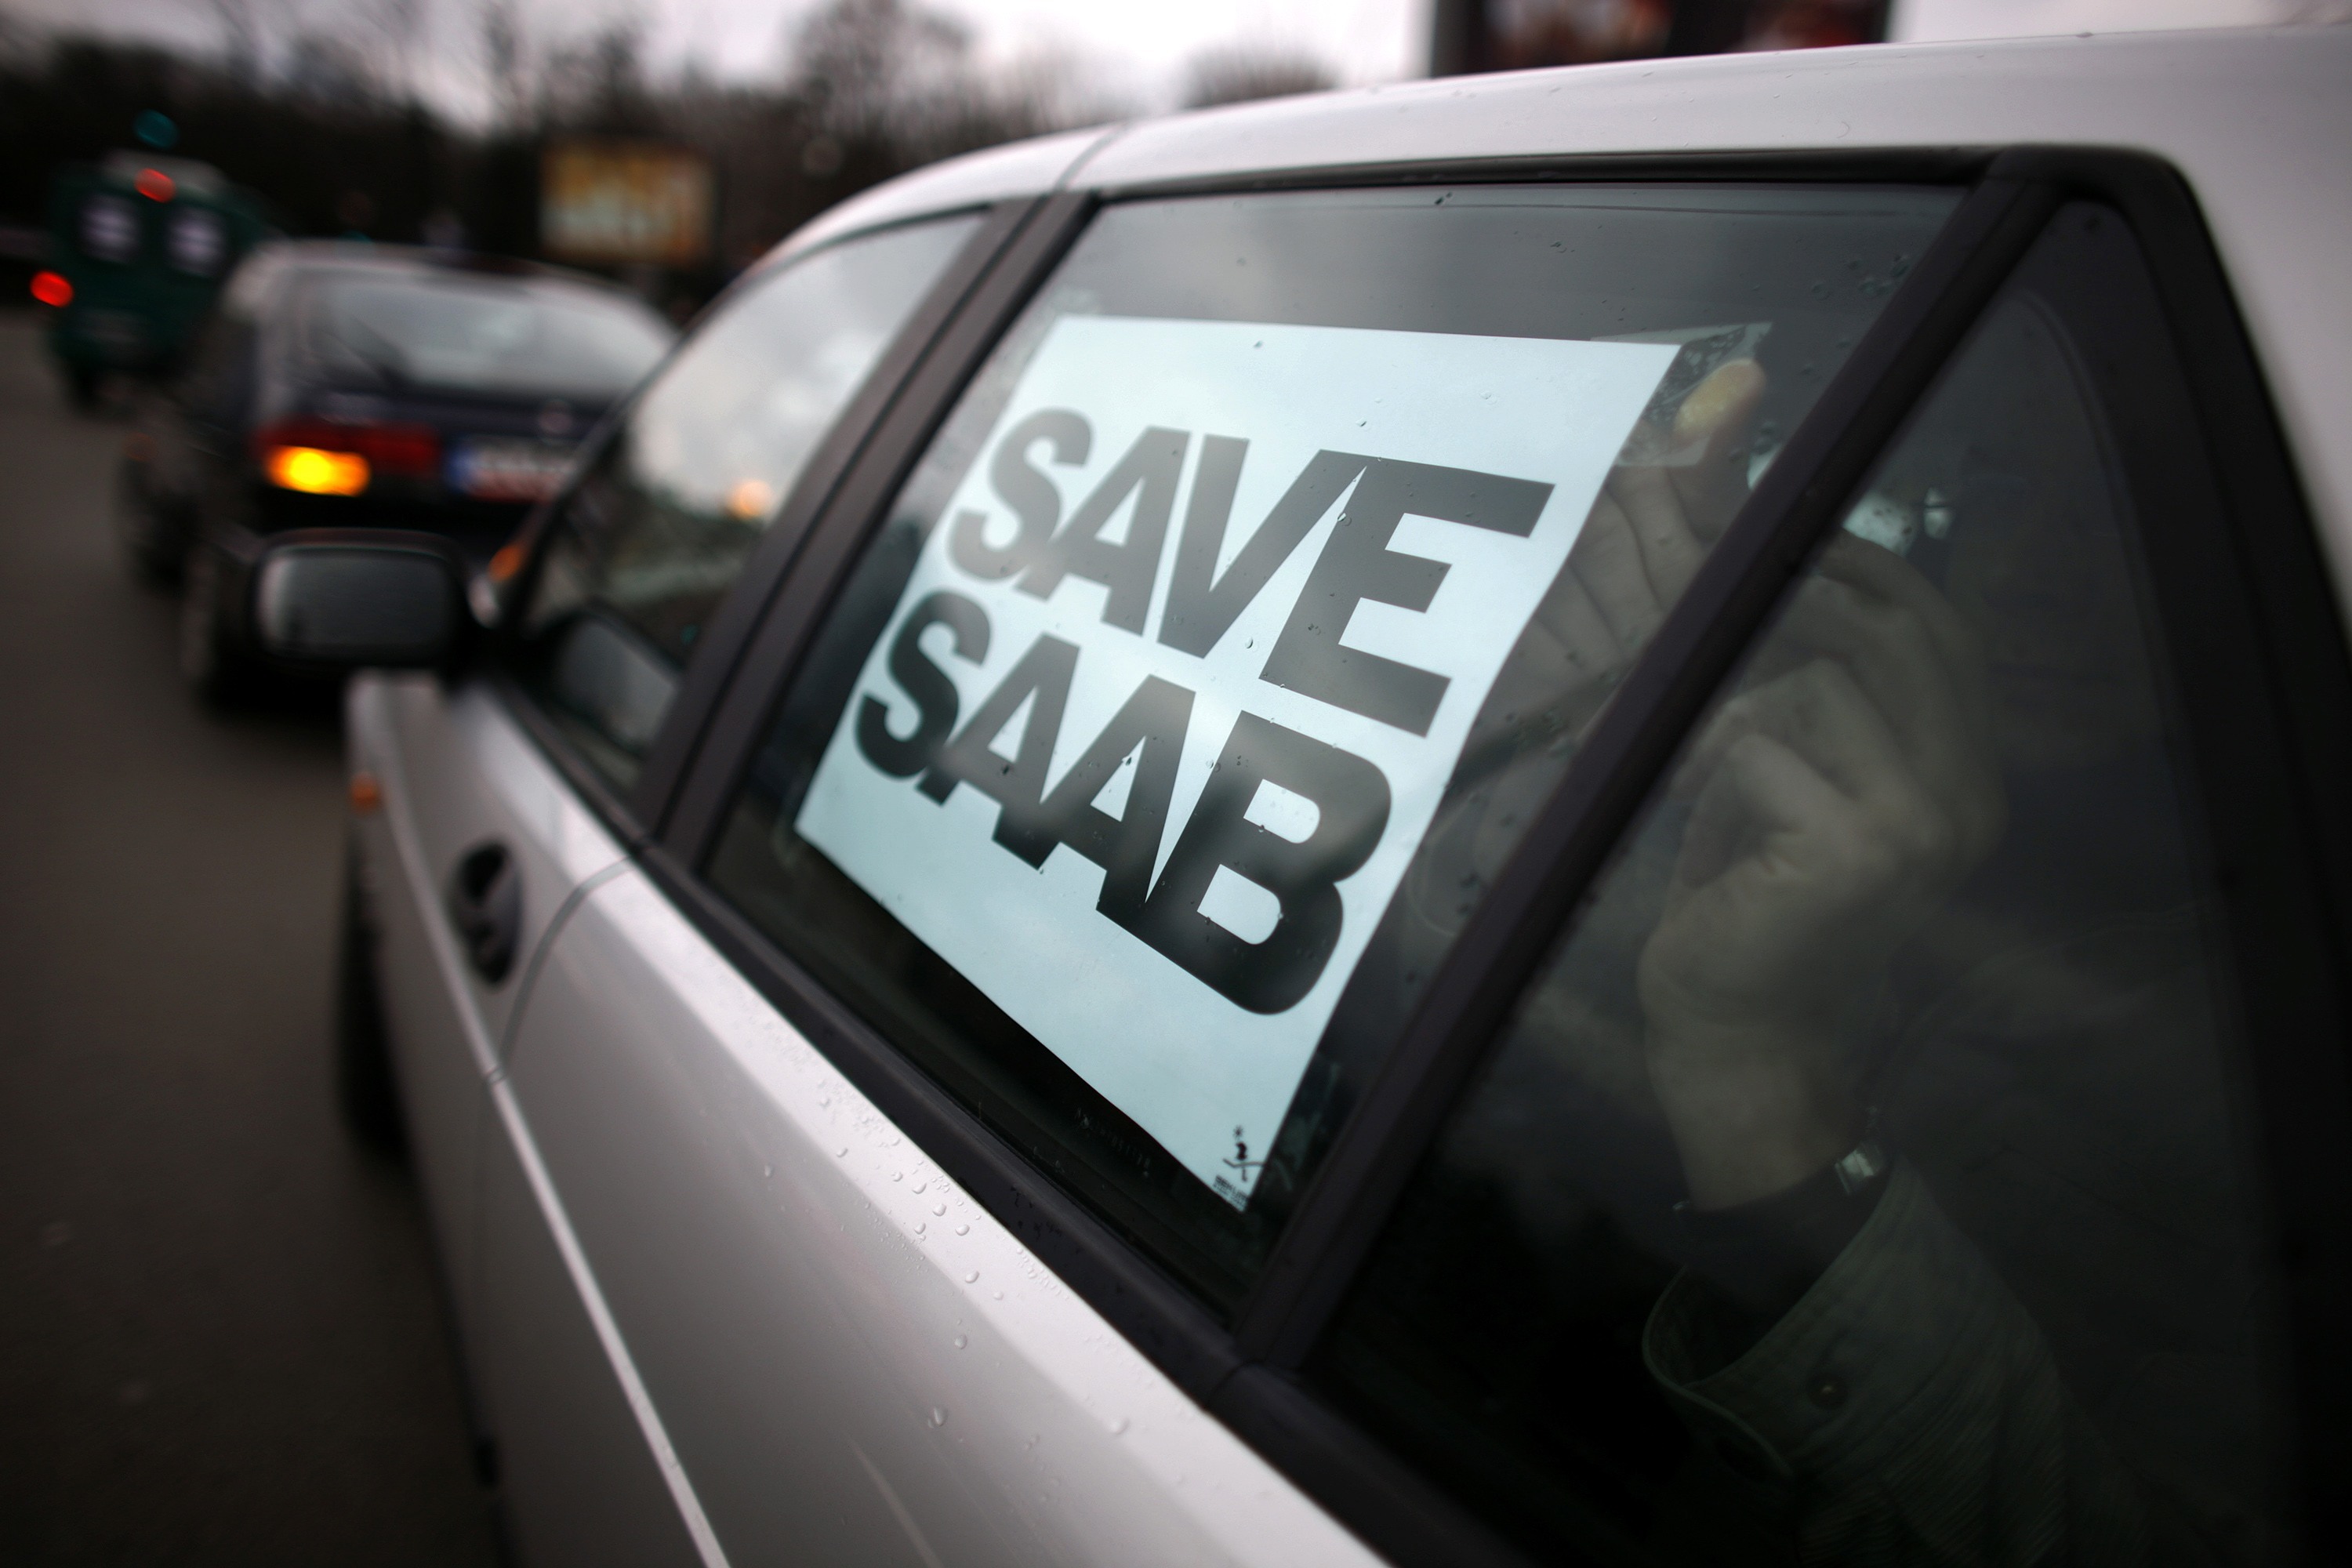 Διαμαρτυρία για την διάσωση της Saab και τα σχέδια της General Motors για πώληση της εταιρείας. ΦΩΤΟ REUTERS